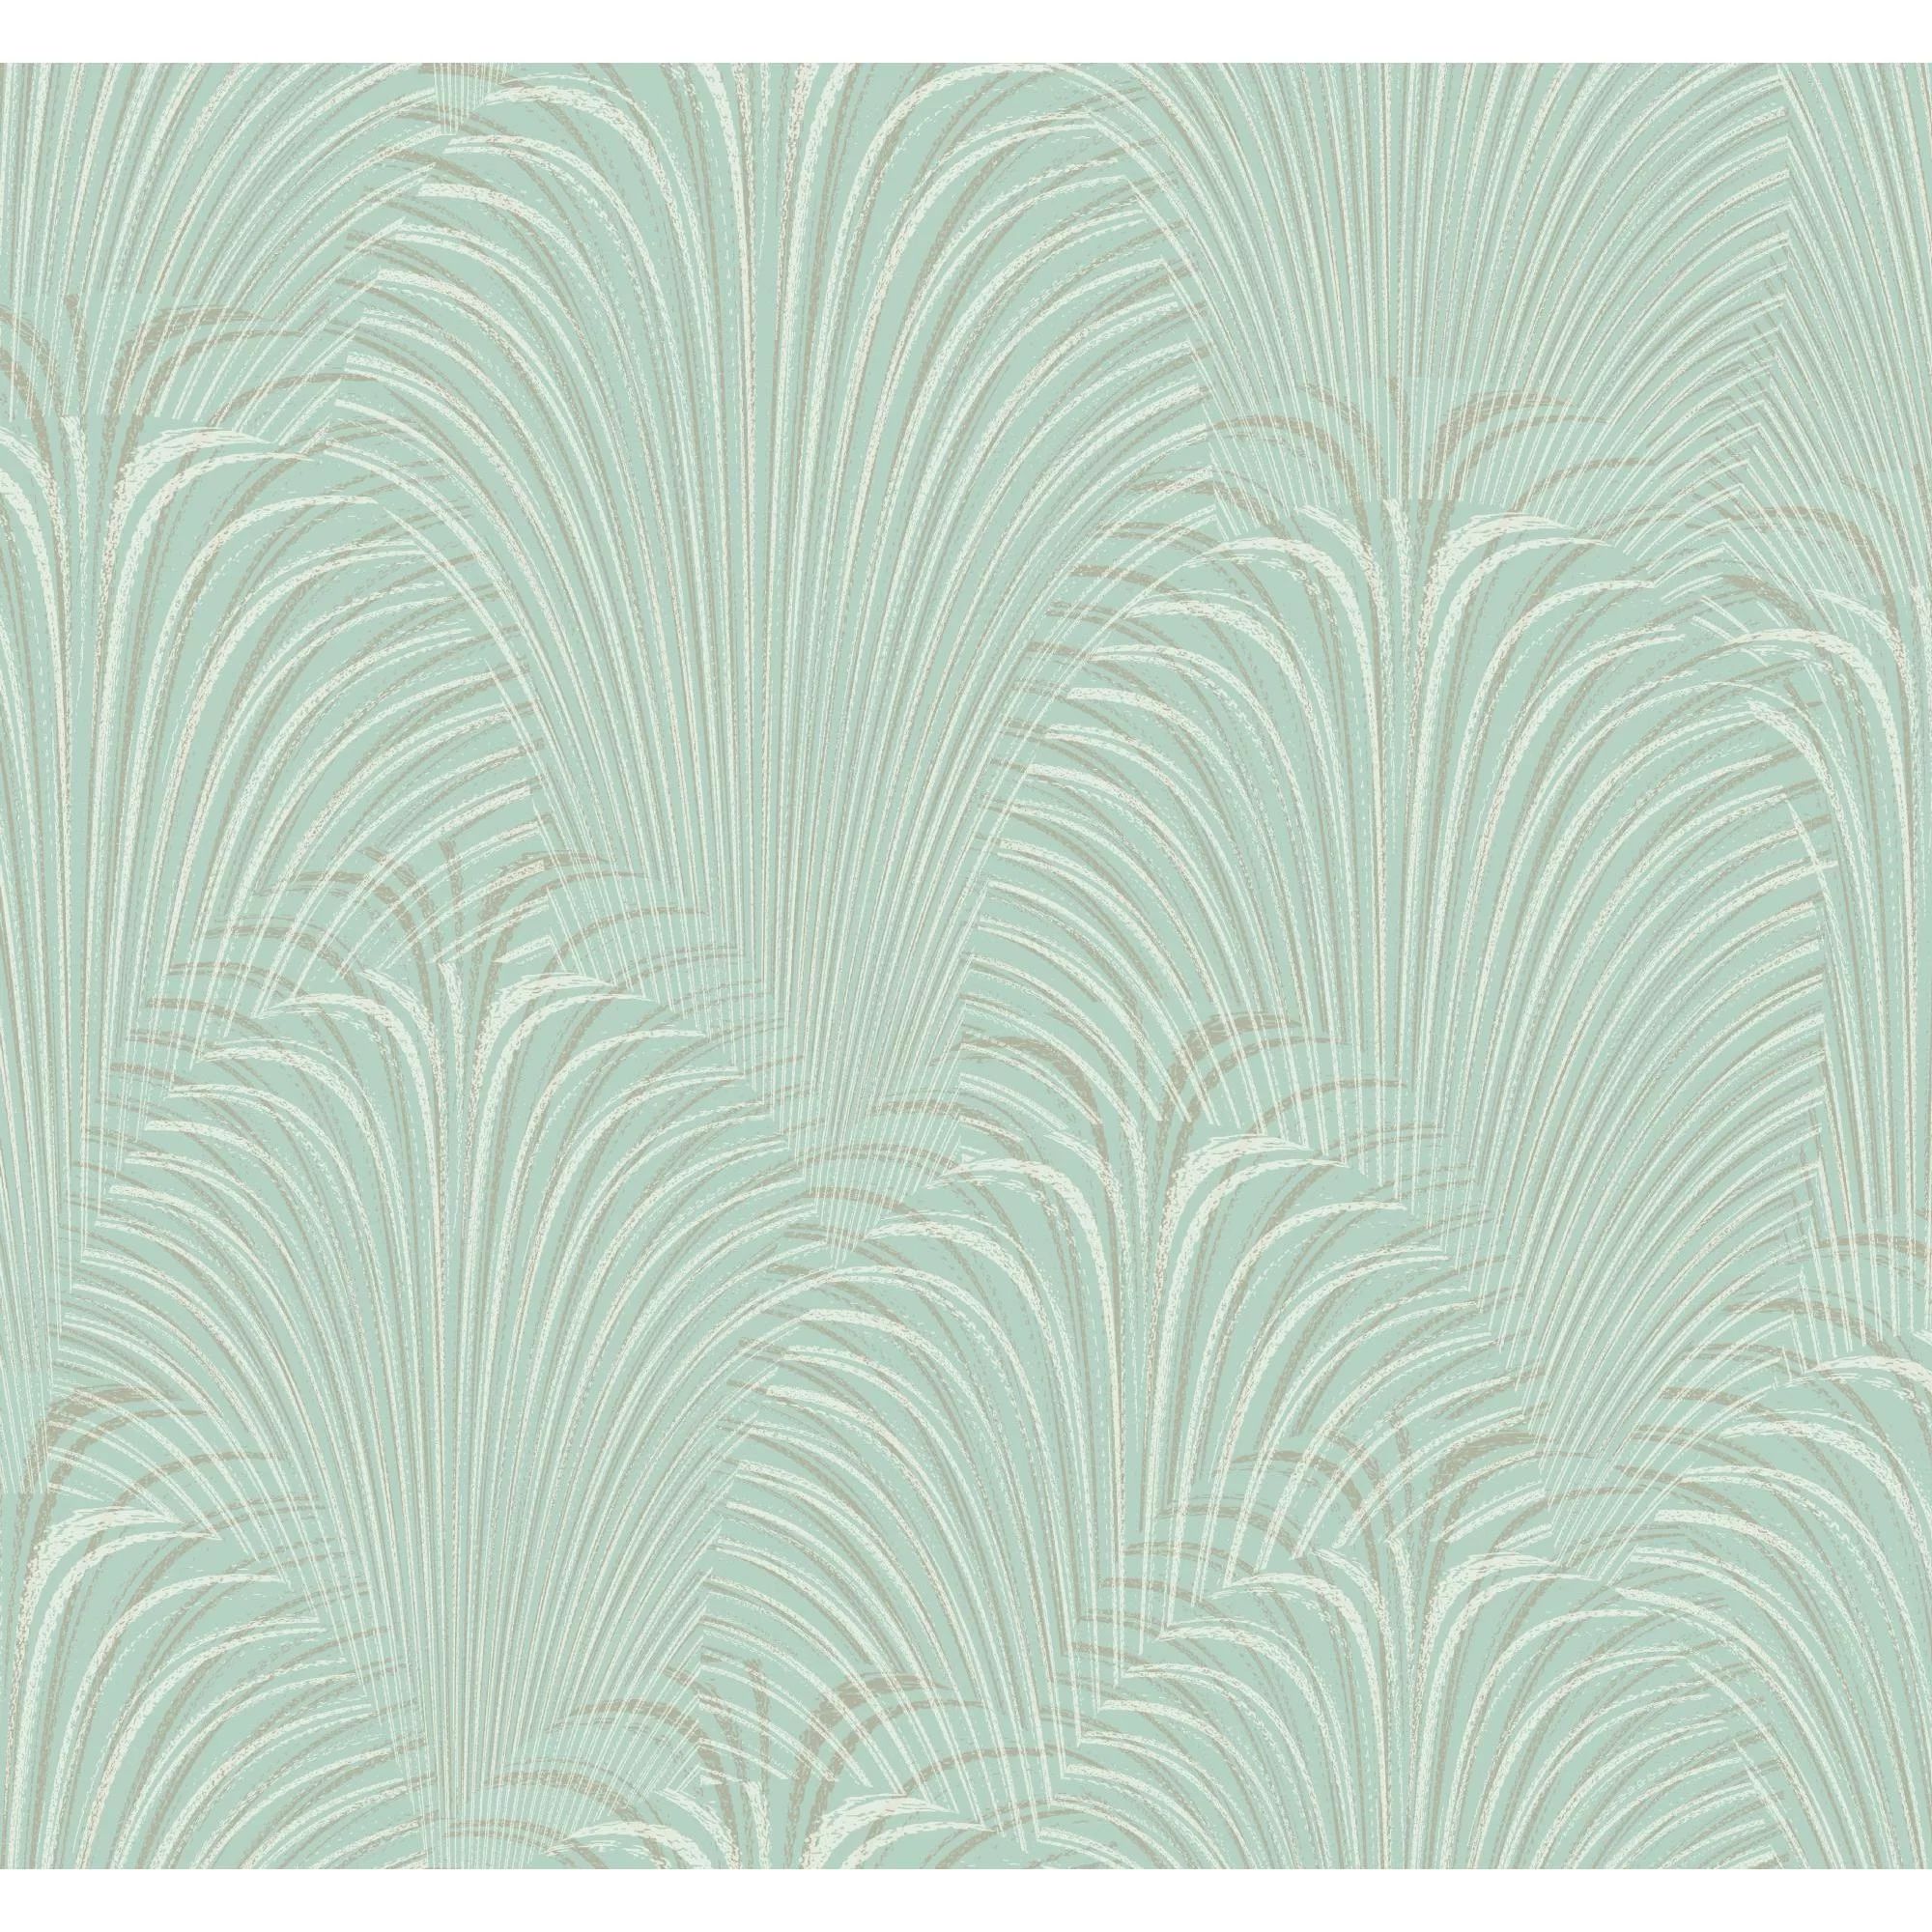 Bittner 27' L x 27" W Wallpaper Roll | Wayfair North America